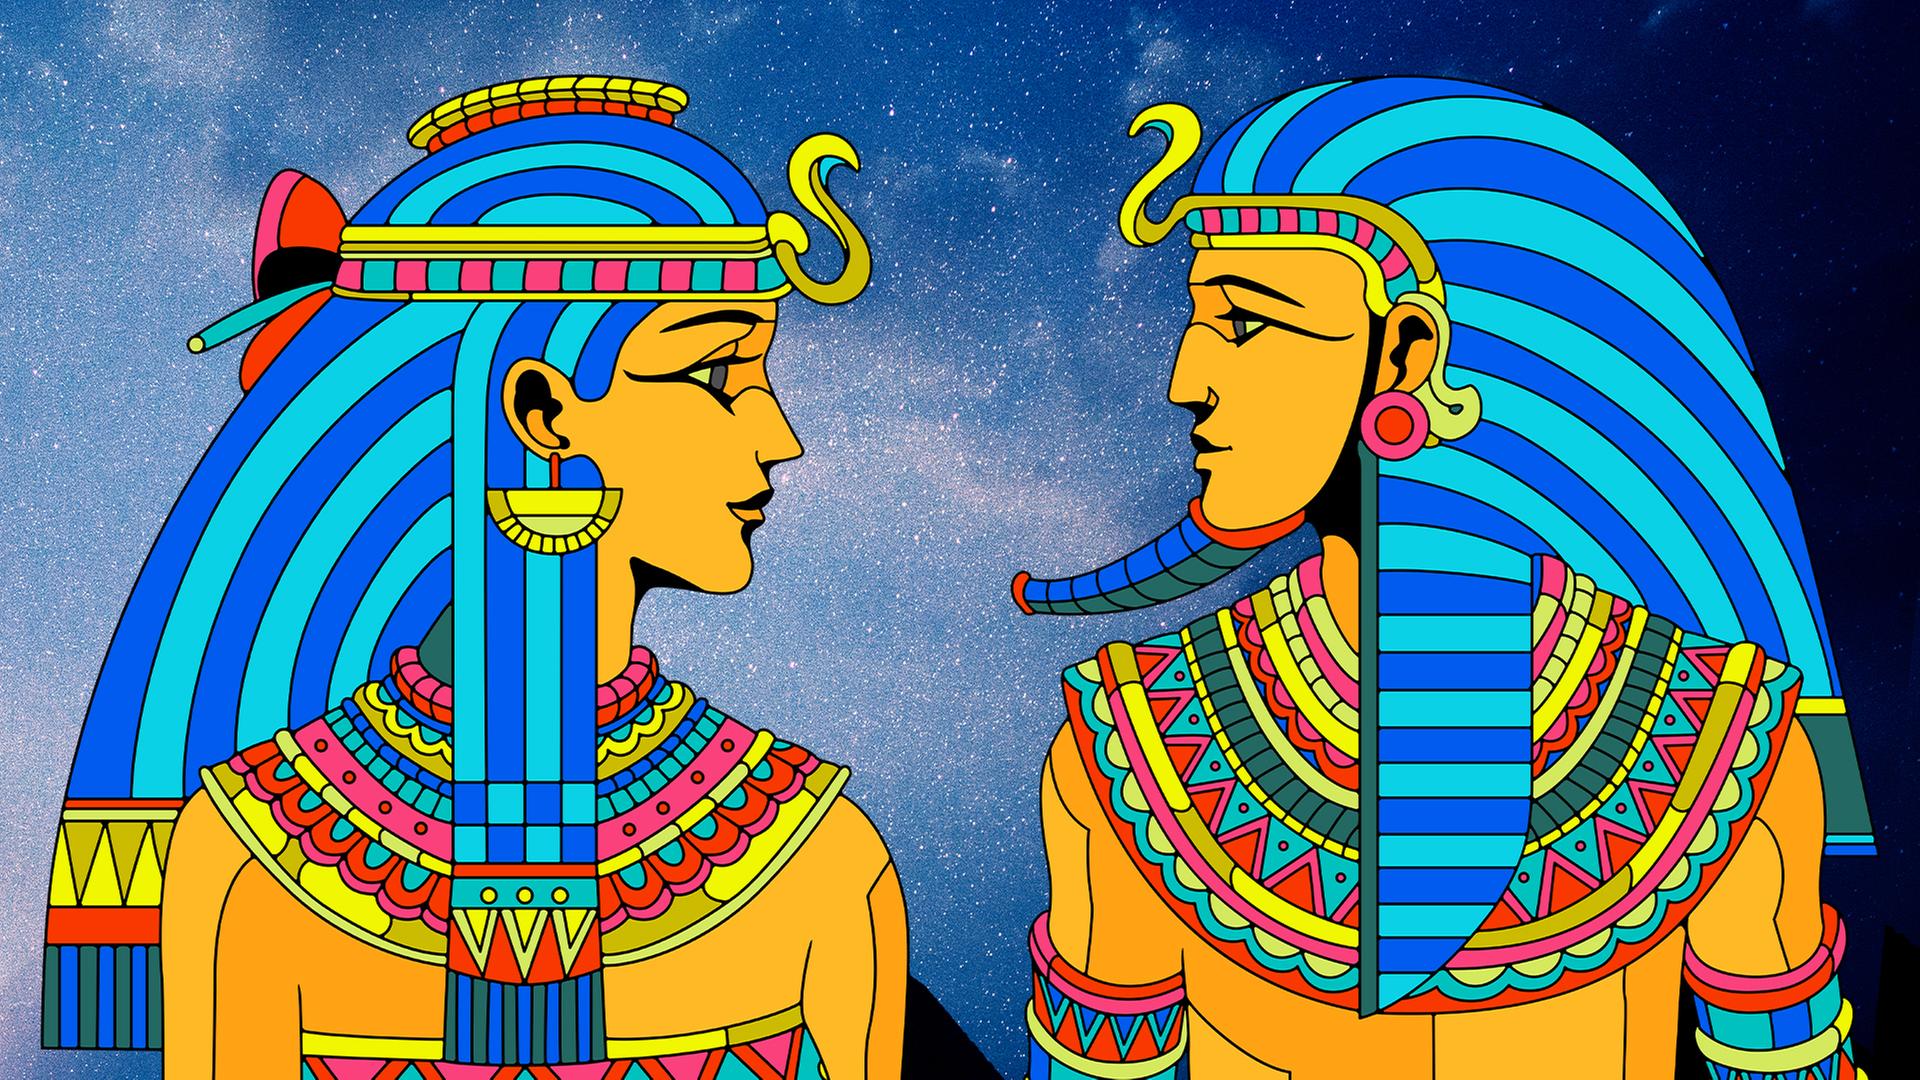  Zeichentrickbüste von Pharaonin und Pharao vor Sternenhimmel mit Pyramiden im Schatten.